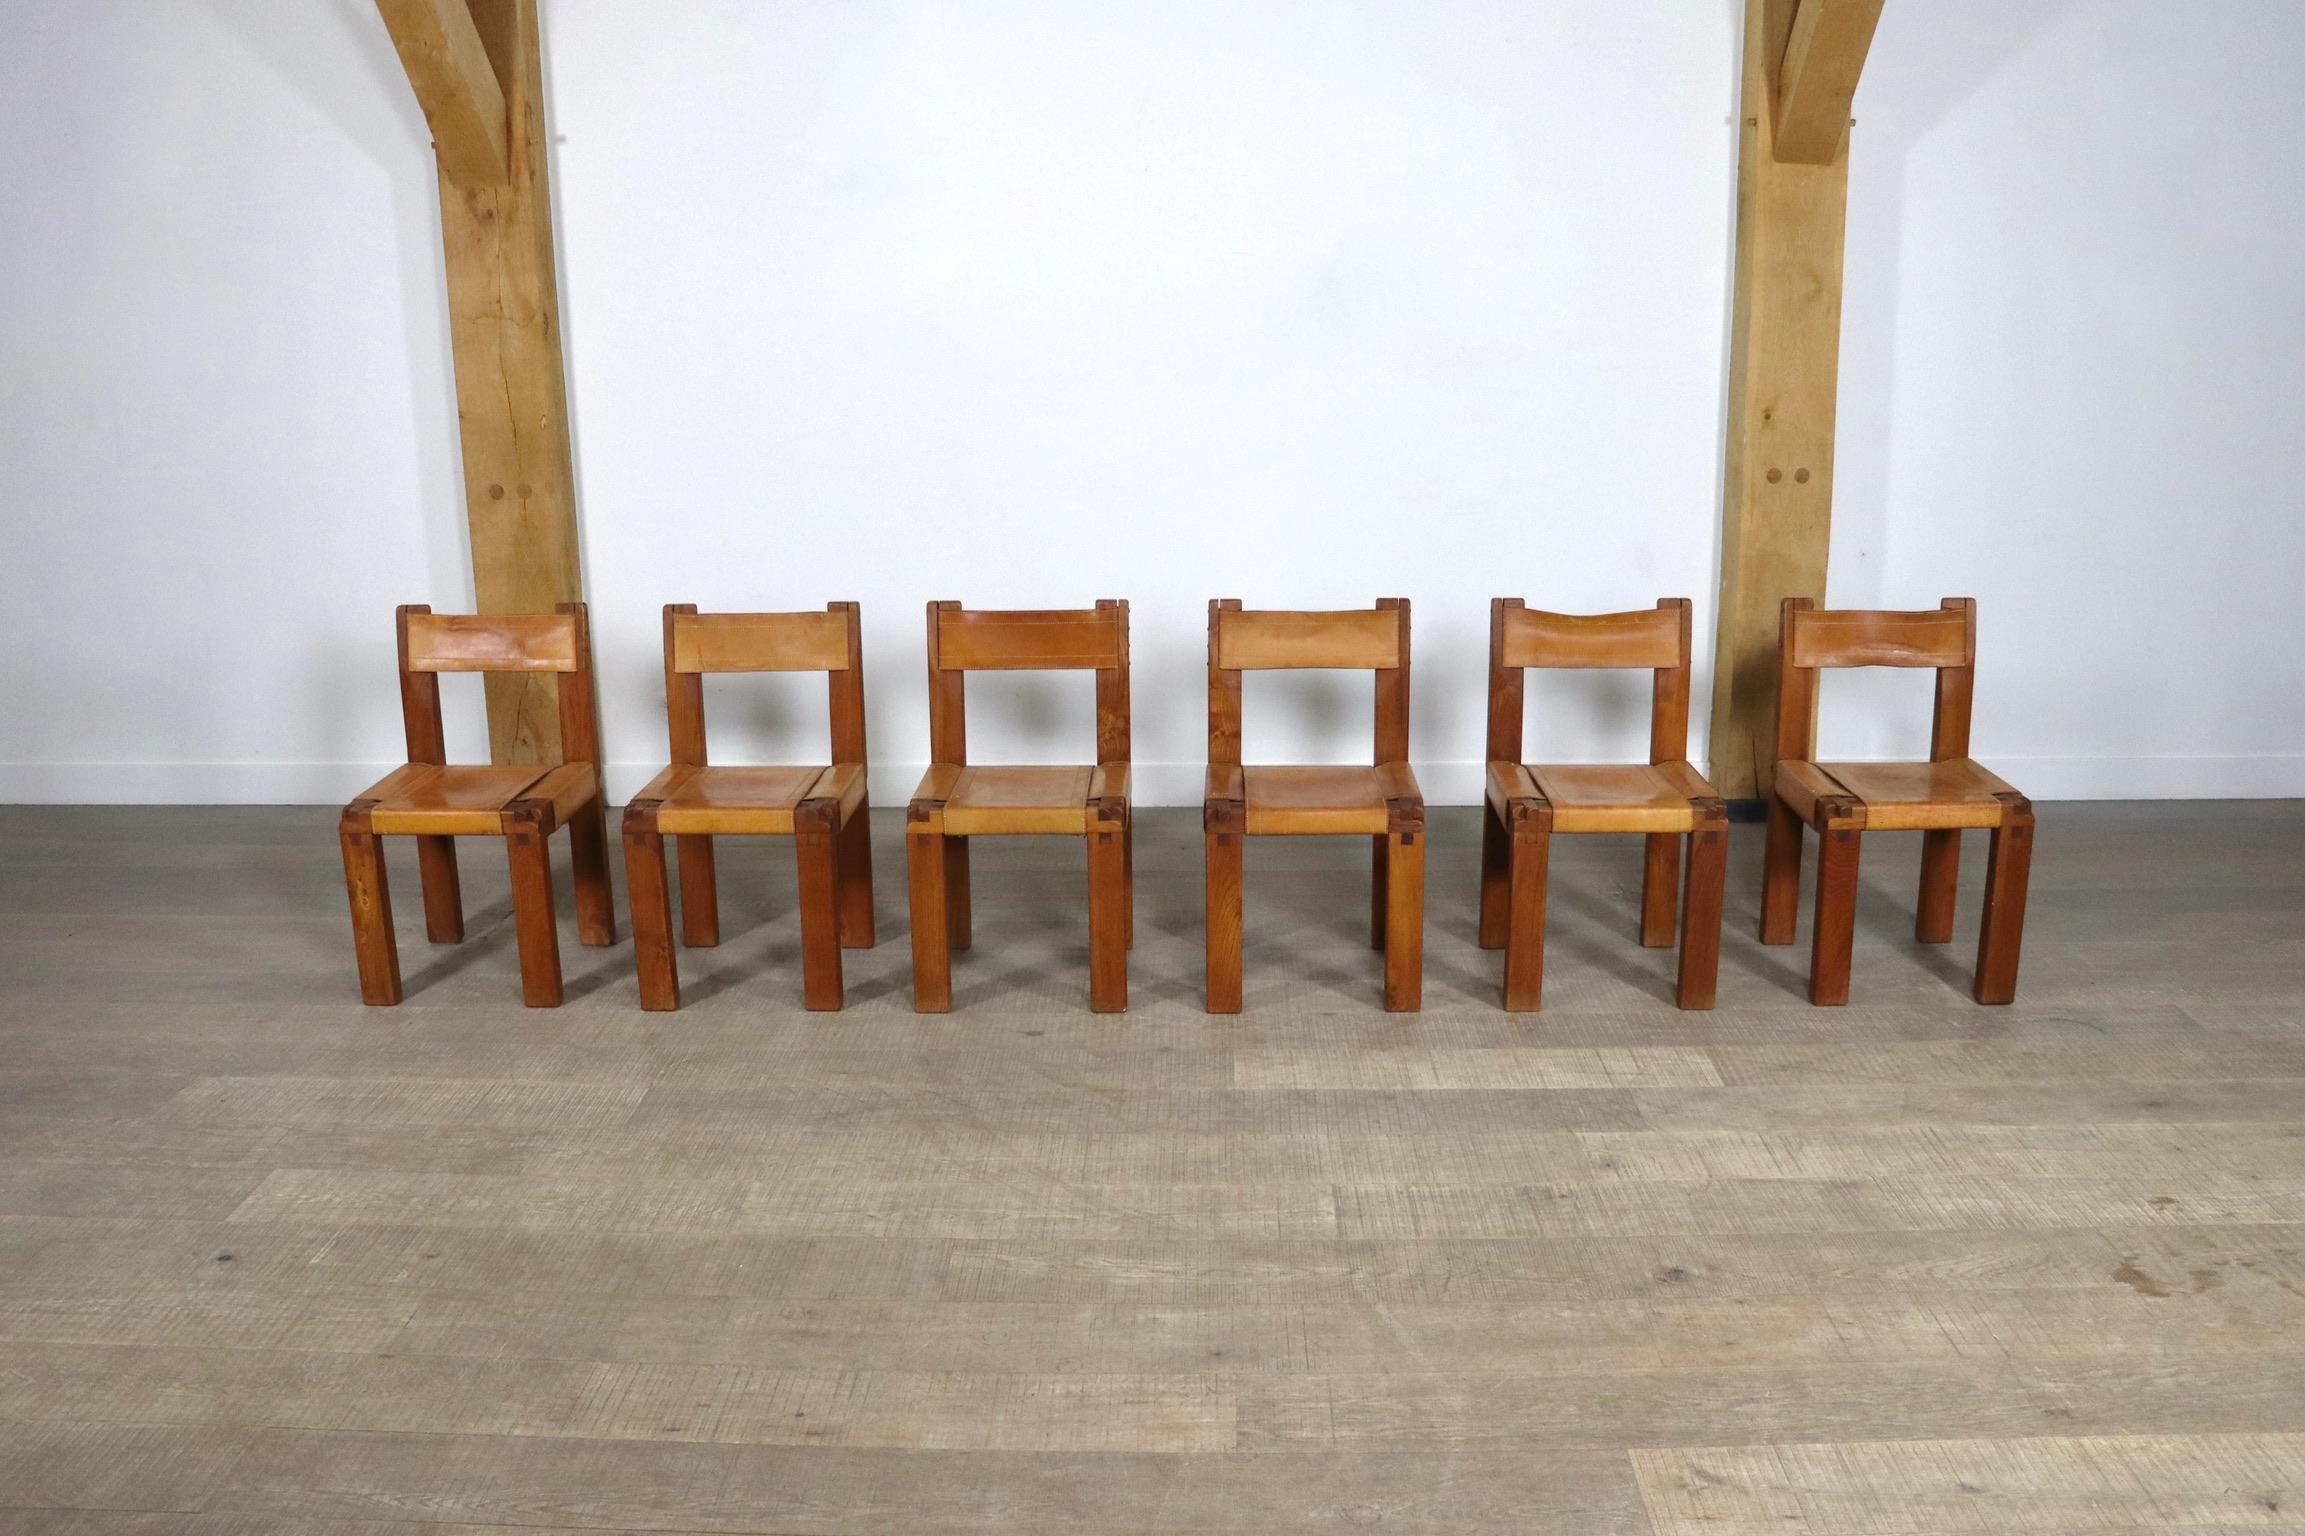 
Incroyable ensemble de 6 chaises de salle à manger modèle S11 par le designer français Pierre Chapo. Le design absolument époustouflant avec les joints en bois emblématiques de la marque Chapo qui ont été créés grâce au rapport d'assemblage